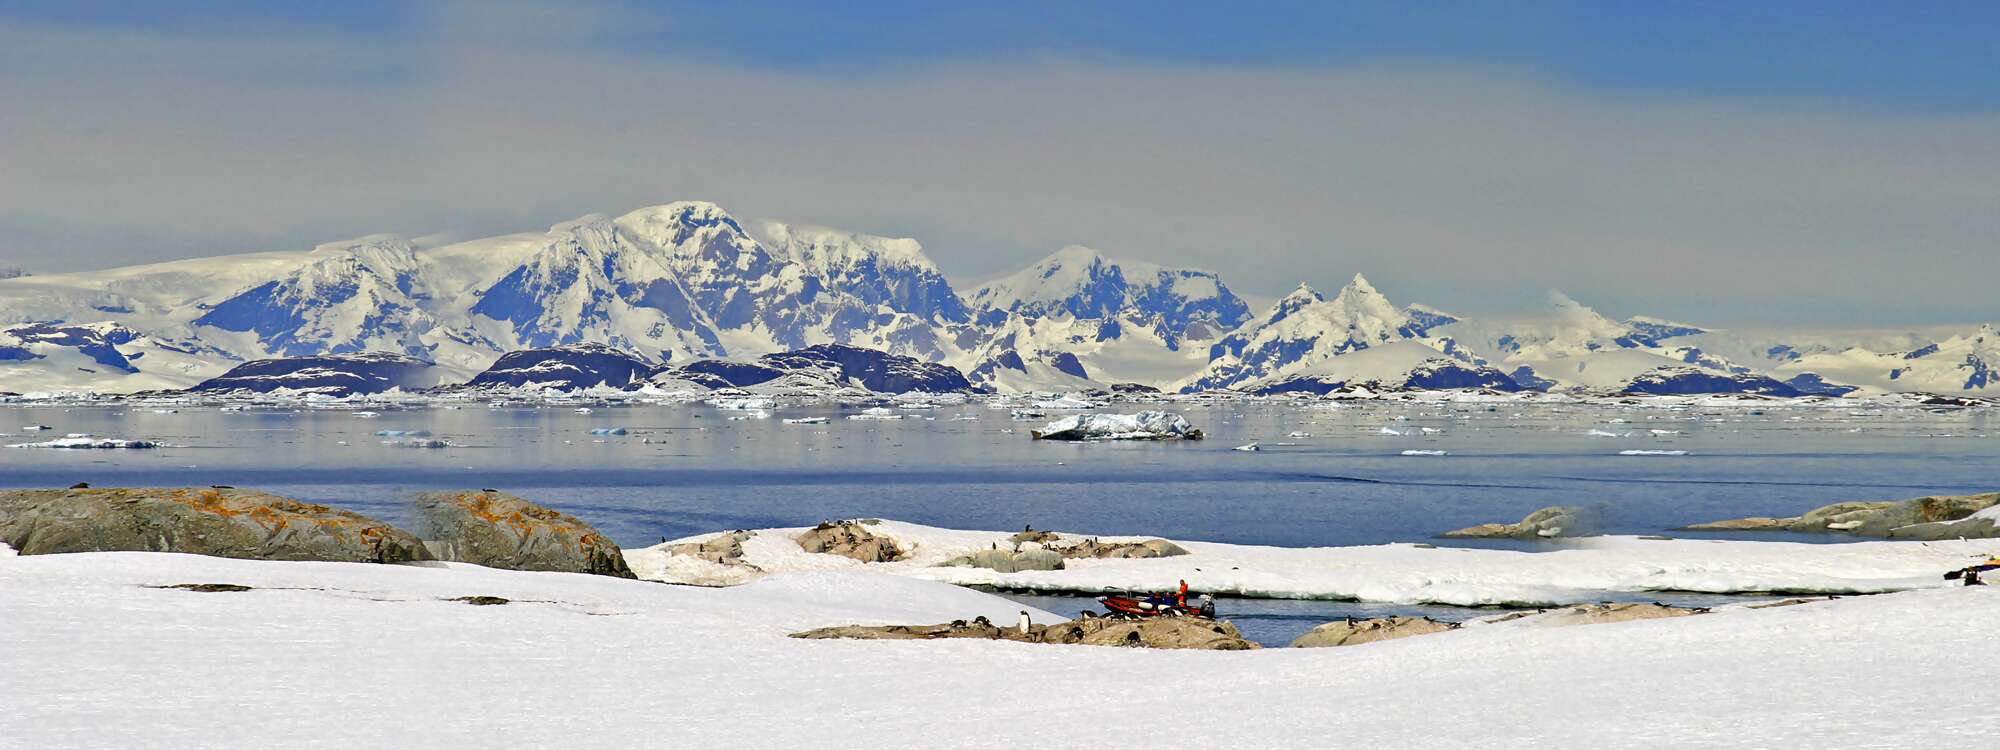 Aufnahme im Wilhelm-Archipel der Antarktischen Halbinsel, nahe der Petermann-Insel. Das Gebiet besteht aus einer Vielzahl von Inseln. in der Antarktis